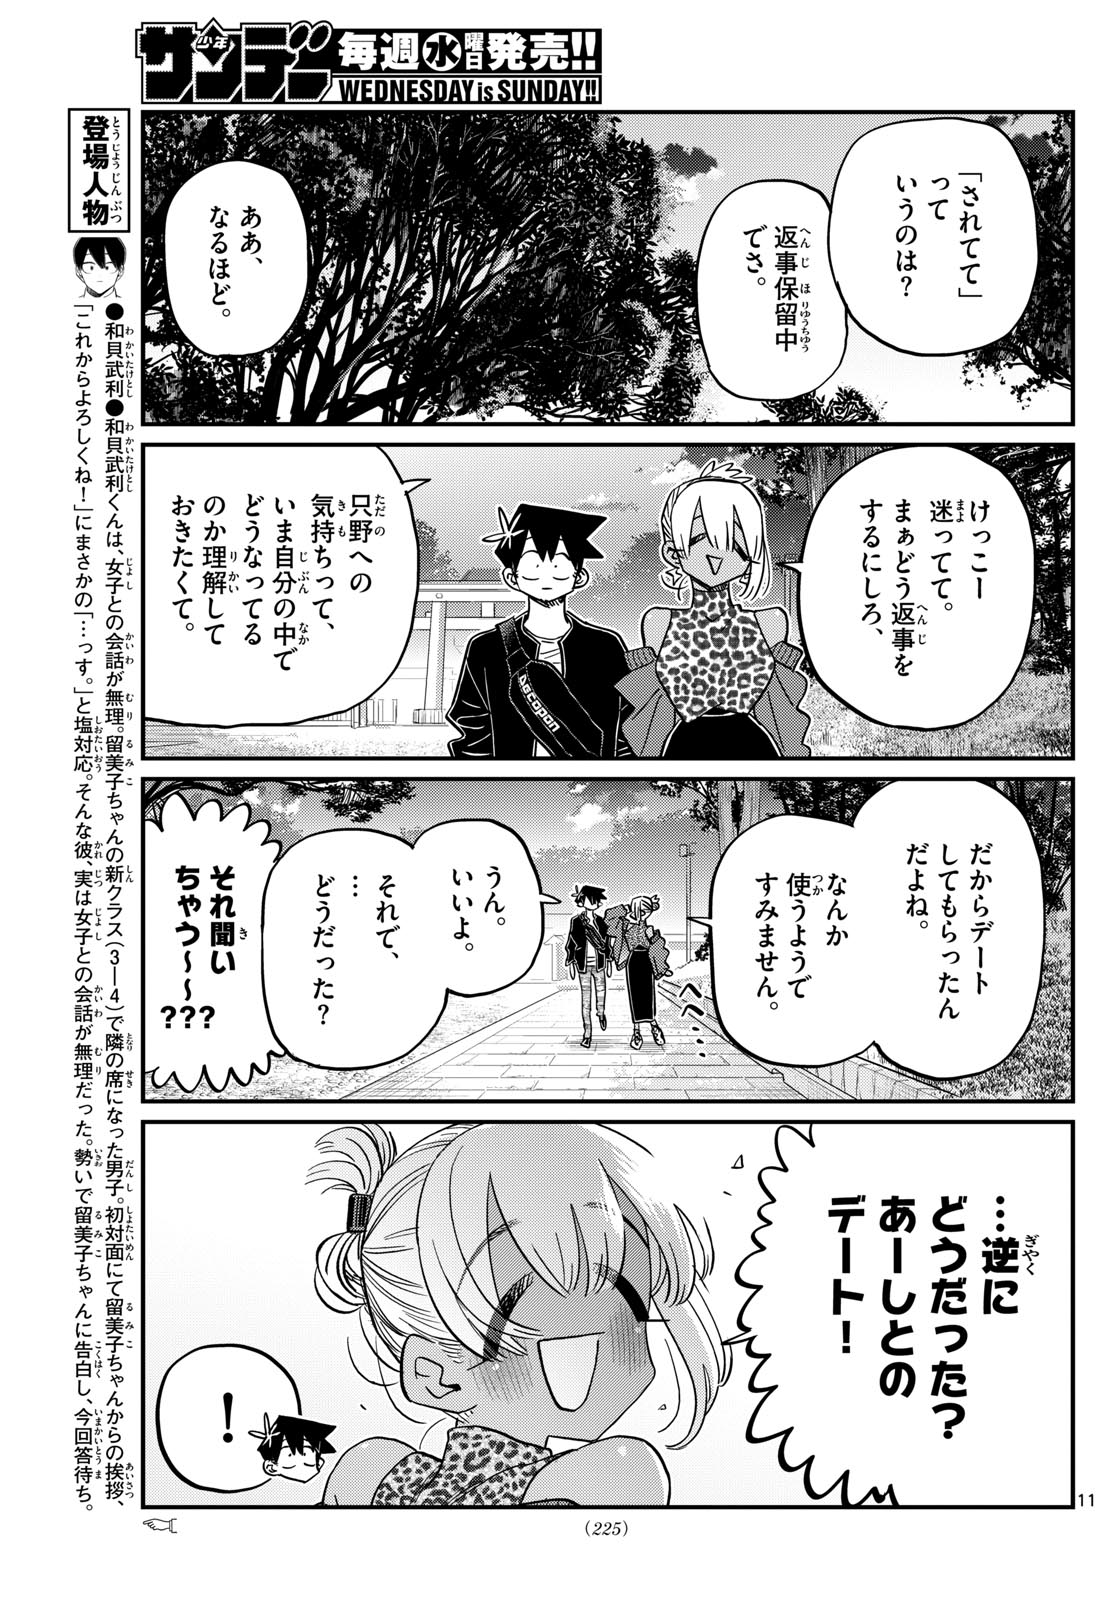 manga: Komi San wa Komyushou Desu Chapter: 433 #manga #mangadaily  #mangaedits #mangameme #komicantcommunicate #komisanwakomyushoudesu…